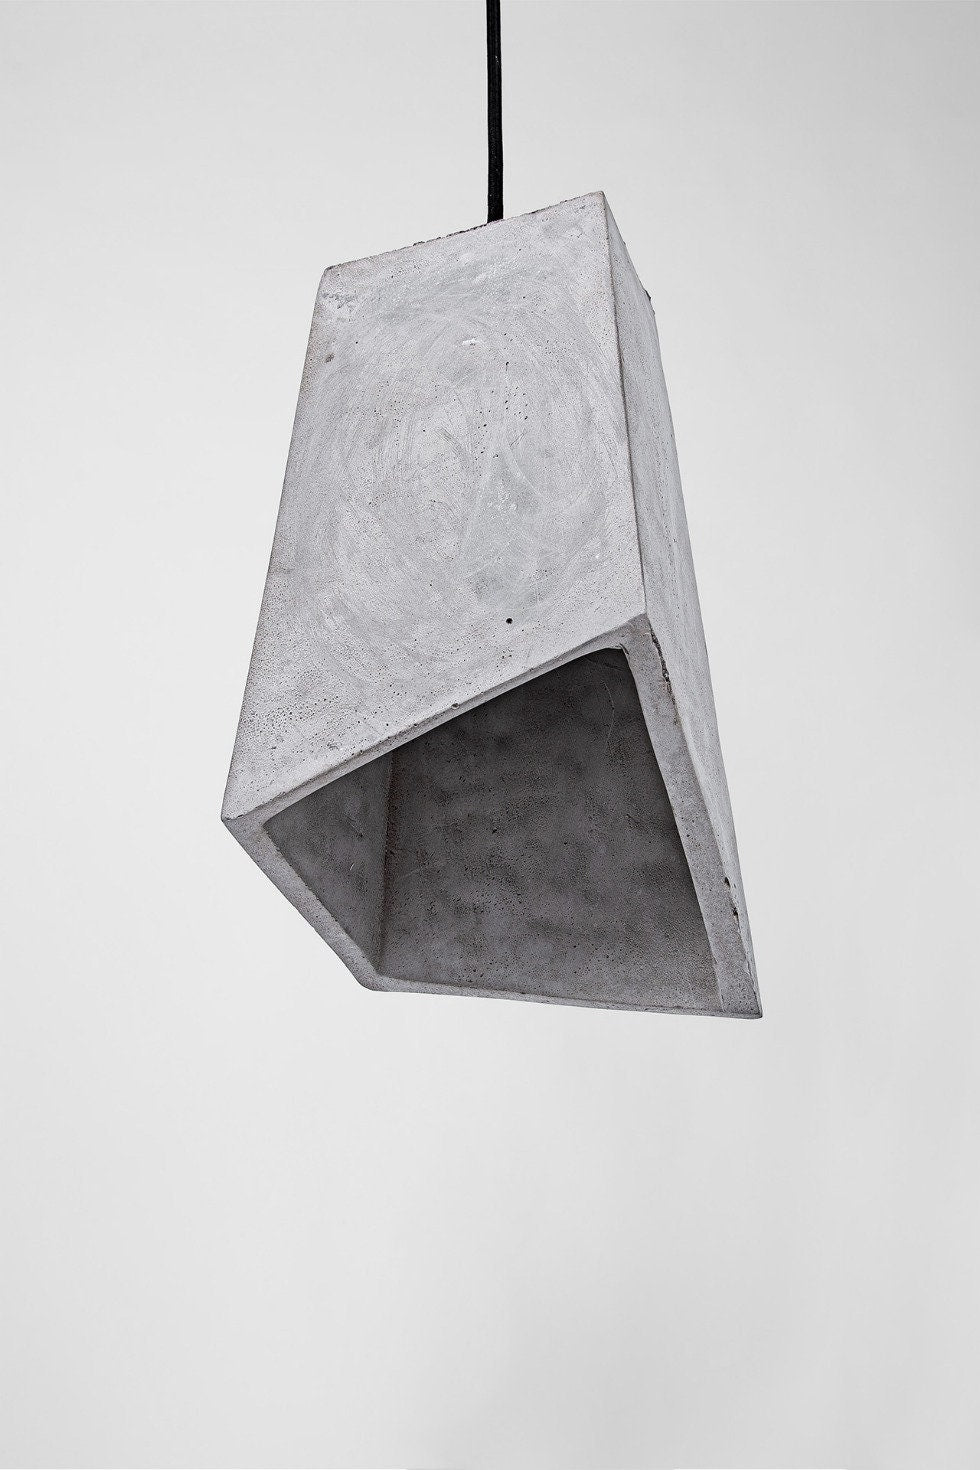 Polygonal – Industrie Design Hängeleuchte, Hängelampe aus Beton